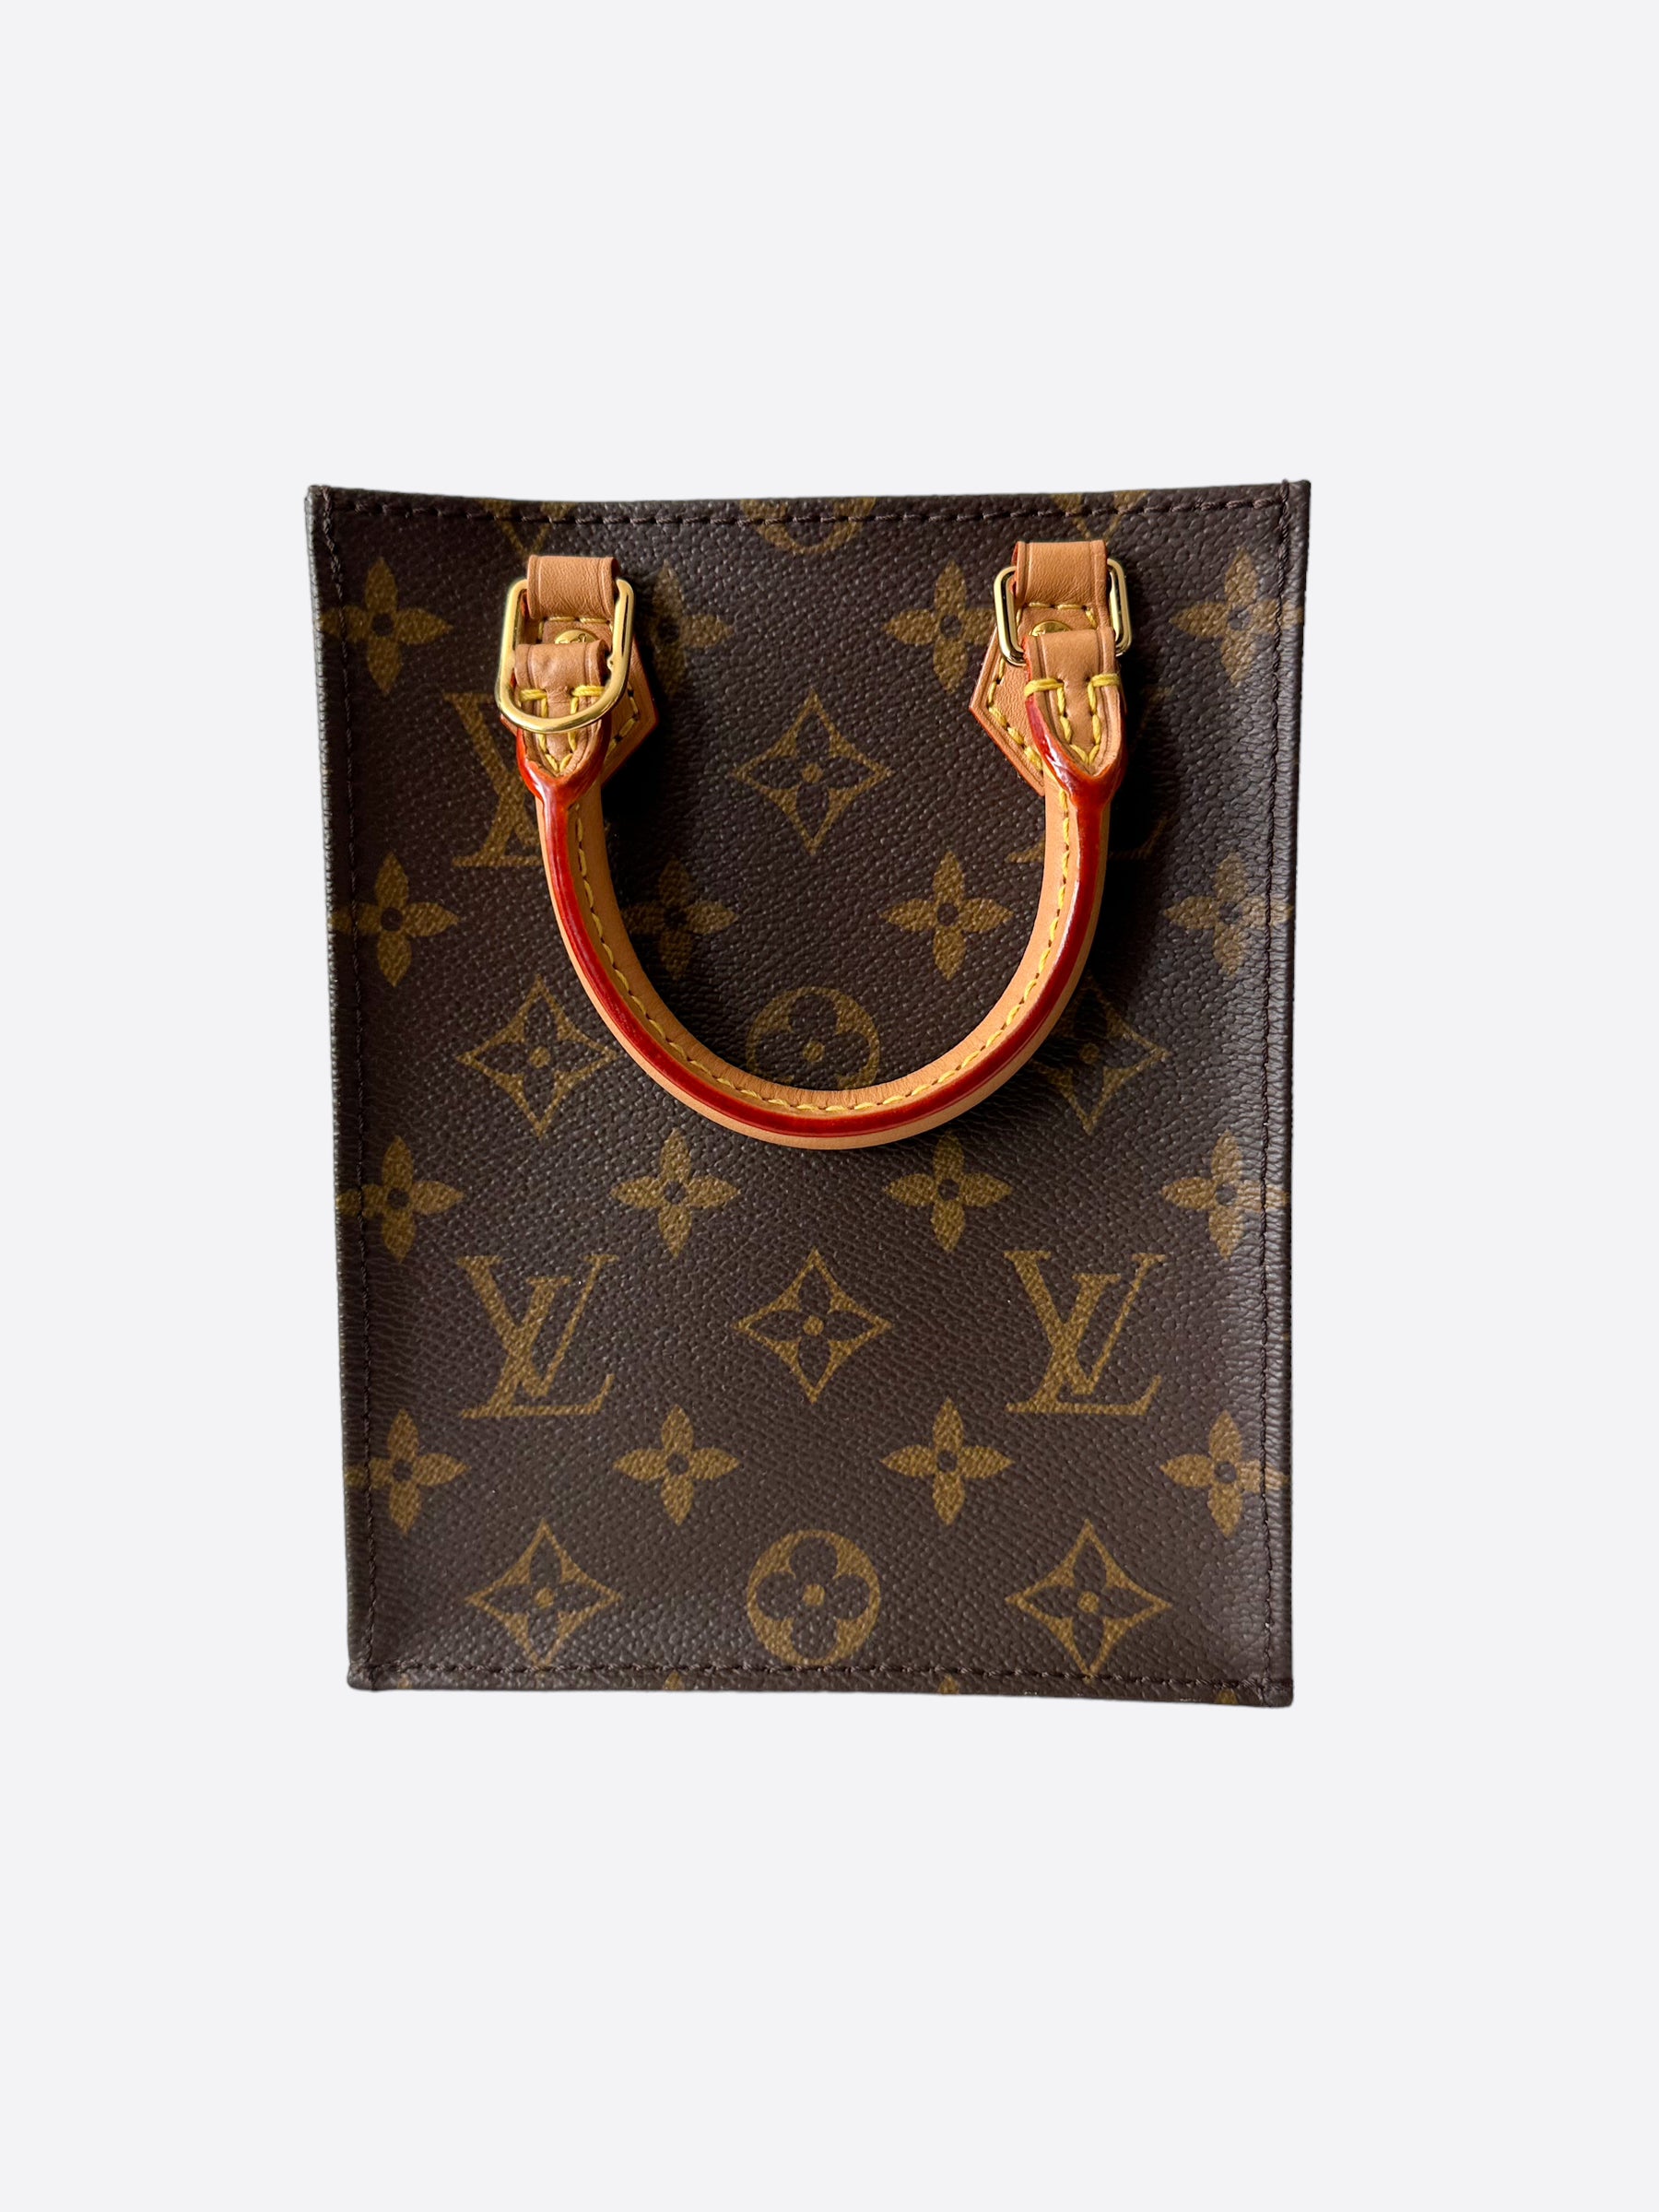 Louis Vuitton Petit Sac Plat Monogram Brown